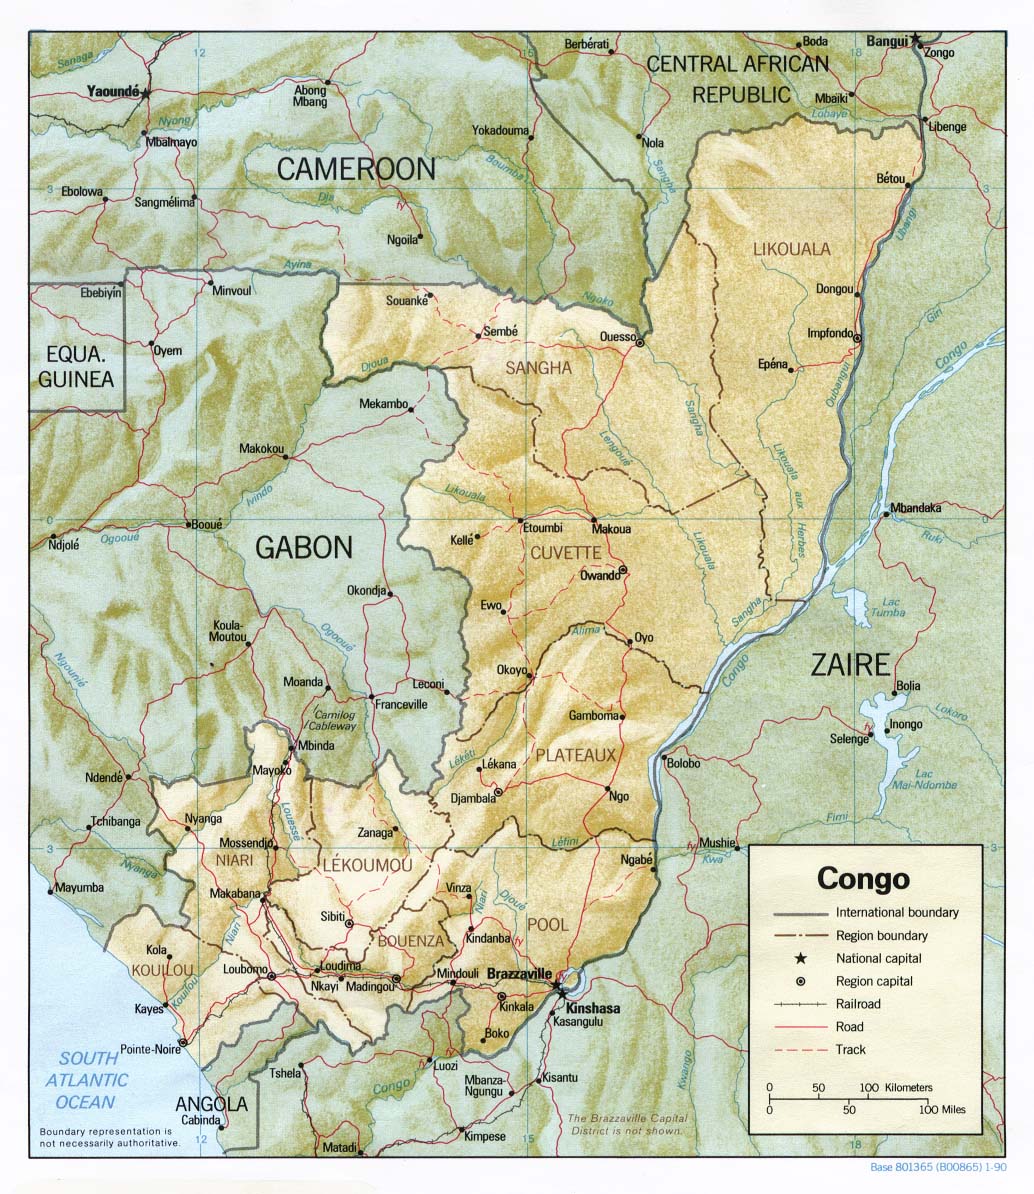 Mapa físico y político de la República del Congo (1990)